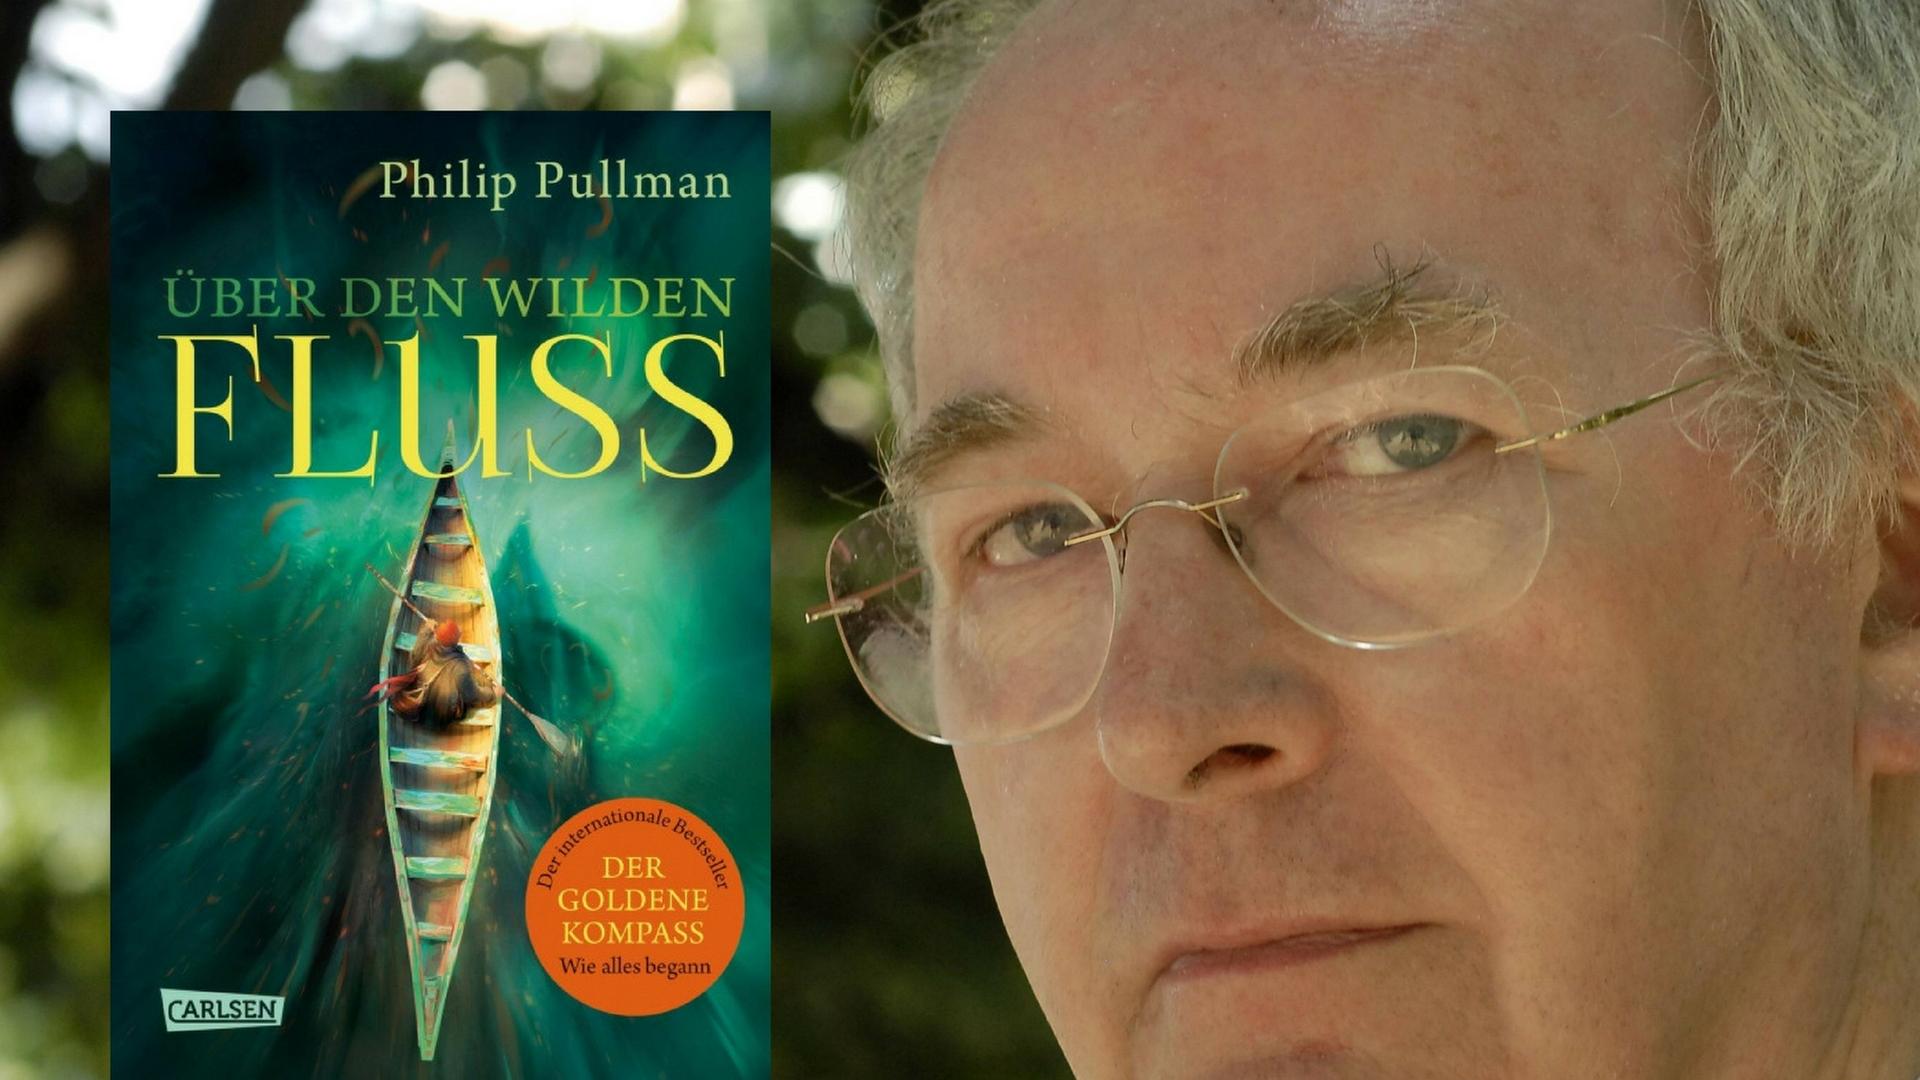 Buchcover Philip Pullman: "Über den wilden Fluss"